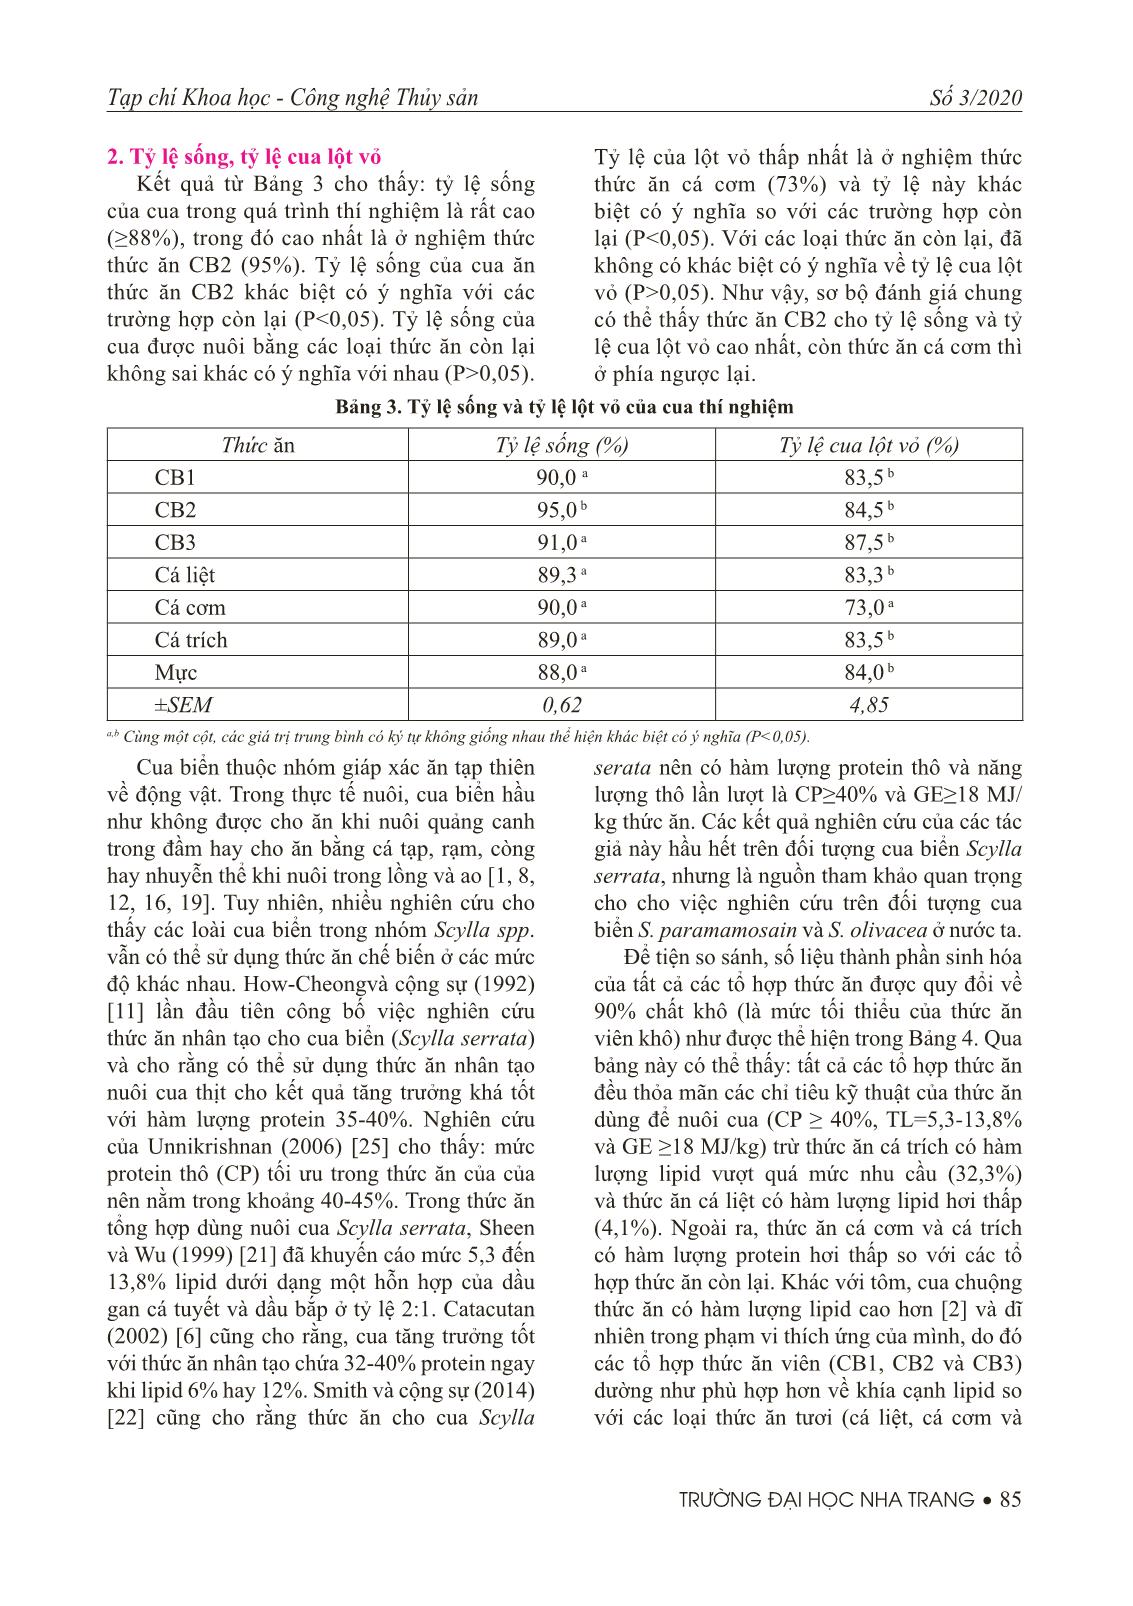 Ảnh hưởng của thức ăn khác nhau đến tỷ lệ sống và tỷ lệ lột vỏ của cua xanh (Scyllasp.) nuôi trong bể tuần hoàn trang 4